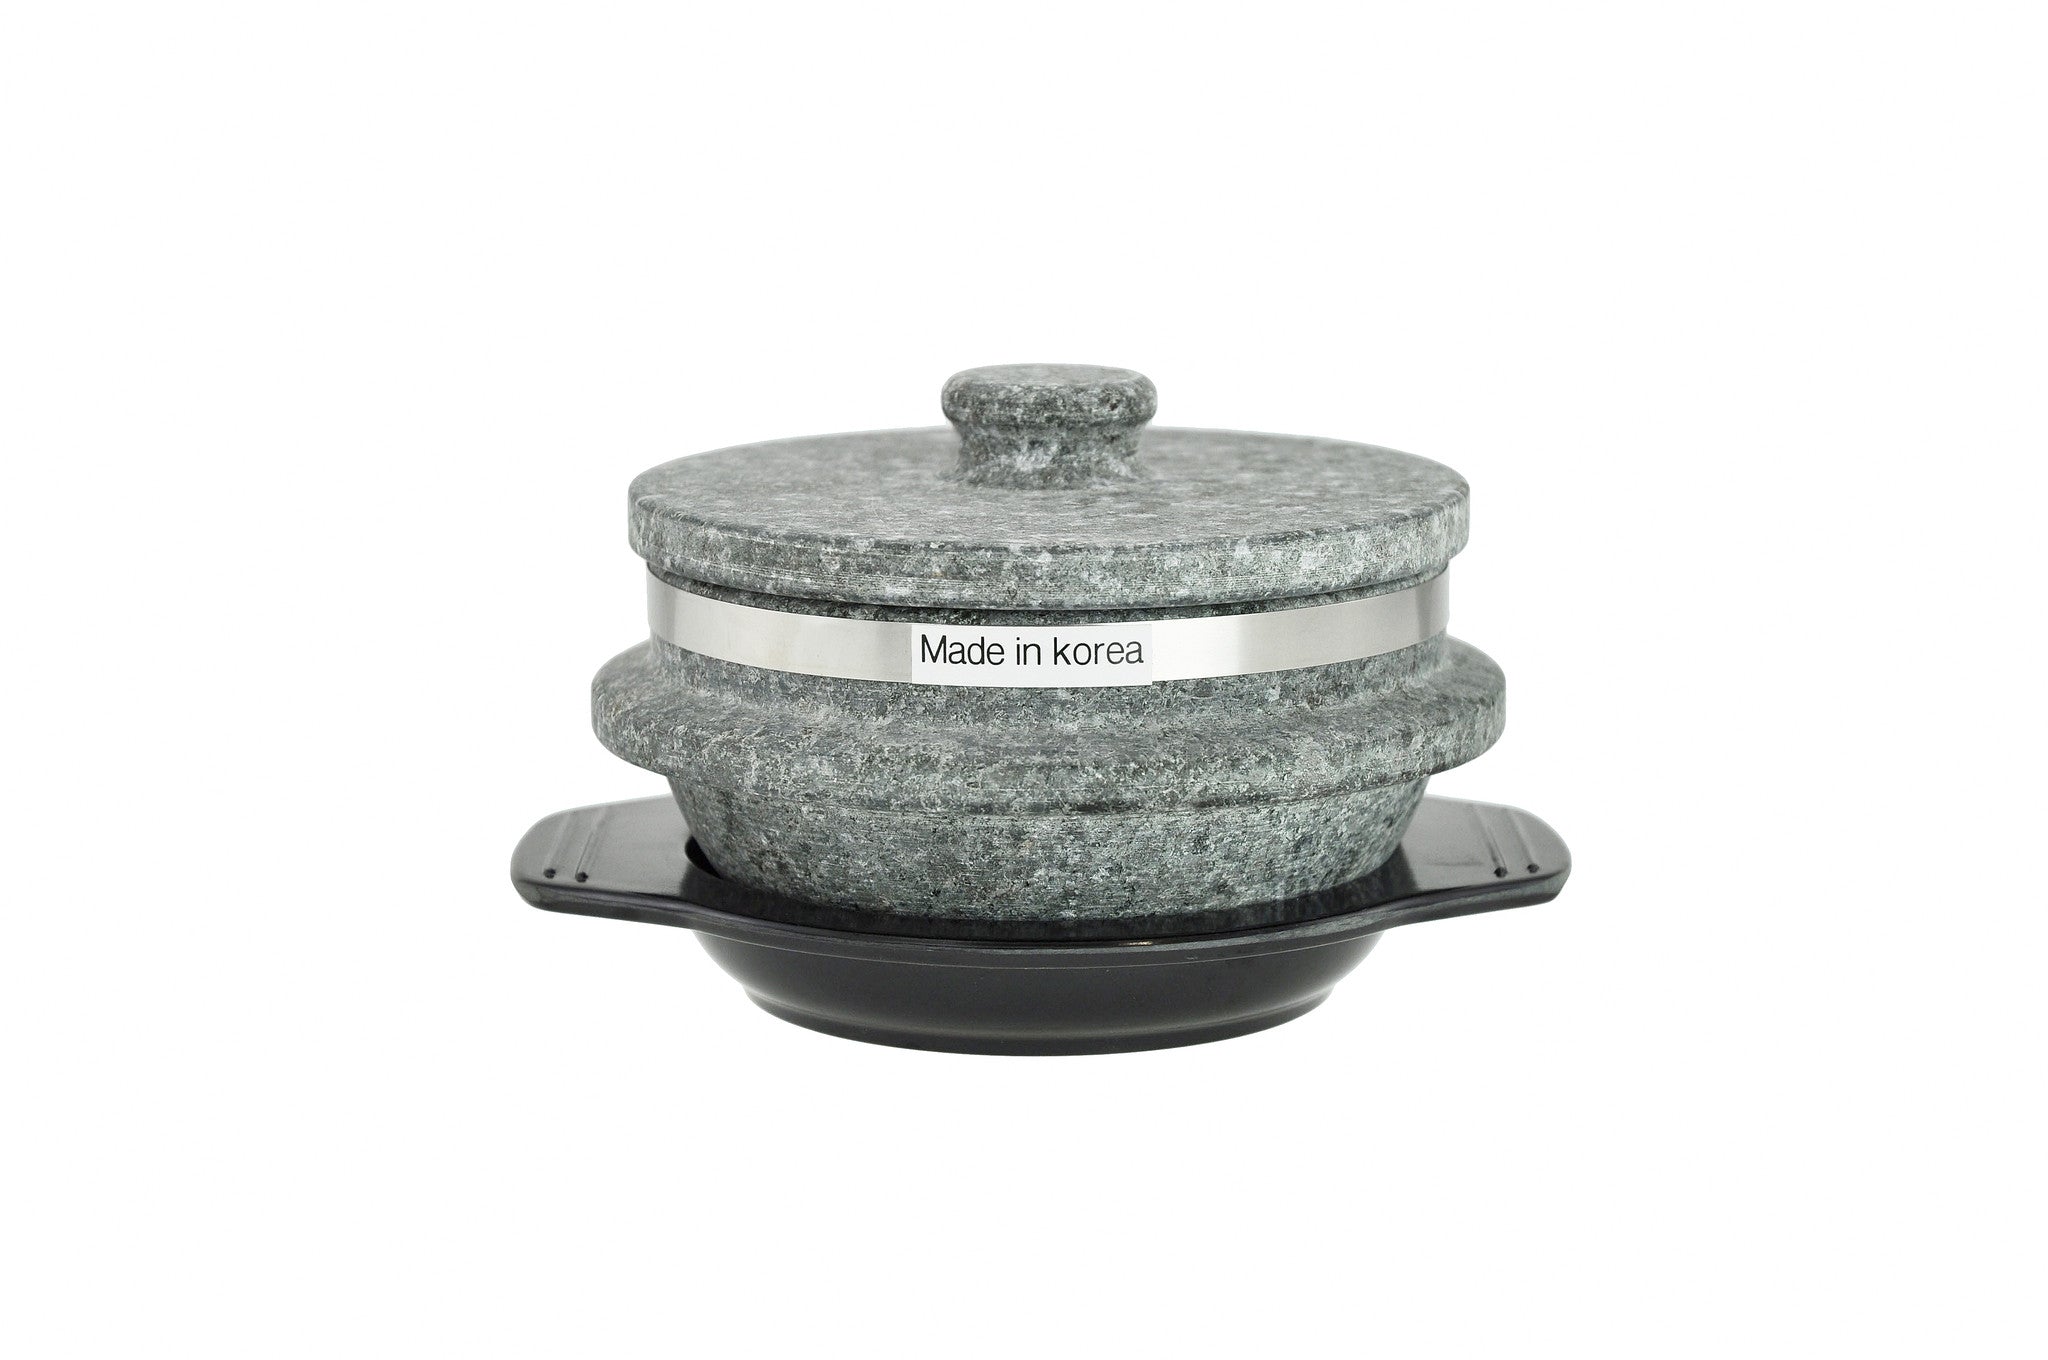 Korean Stone Pot 